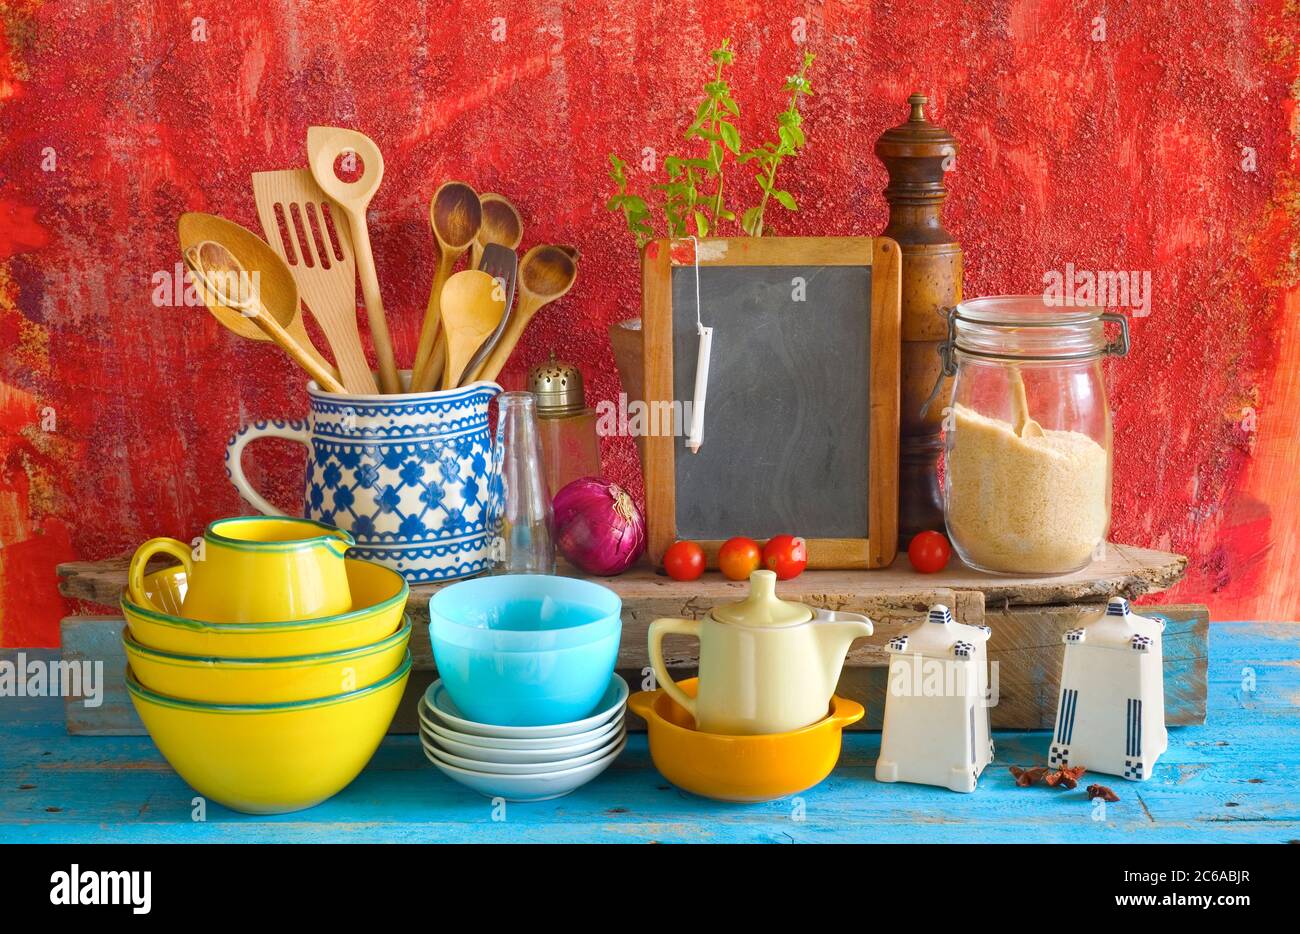 Sammlung von Vintage Geschirr, rote alte Küche Wand Hintergrund ...